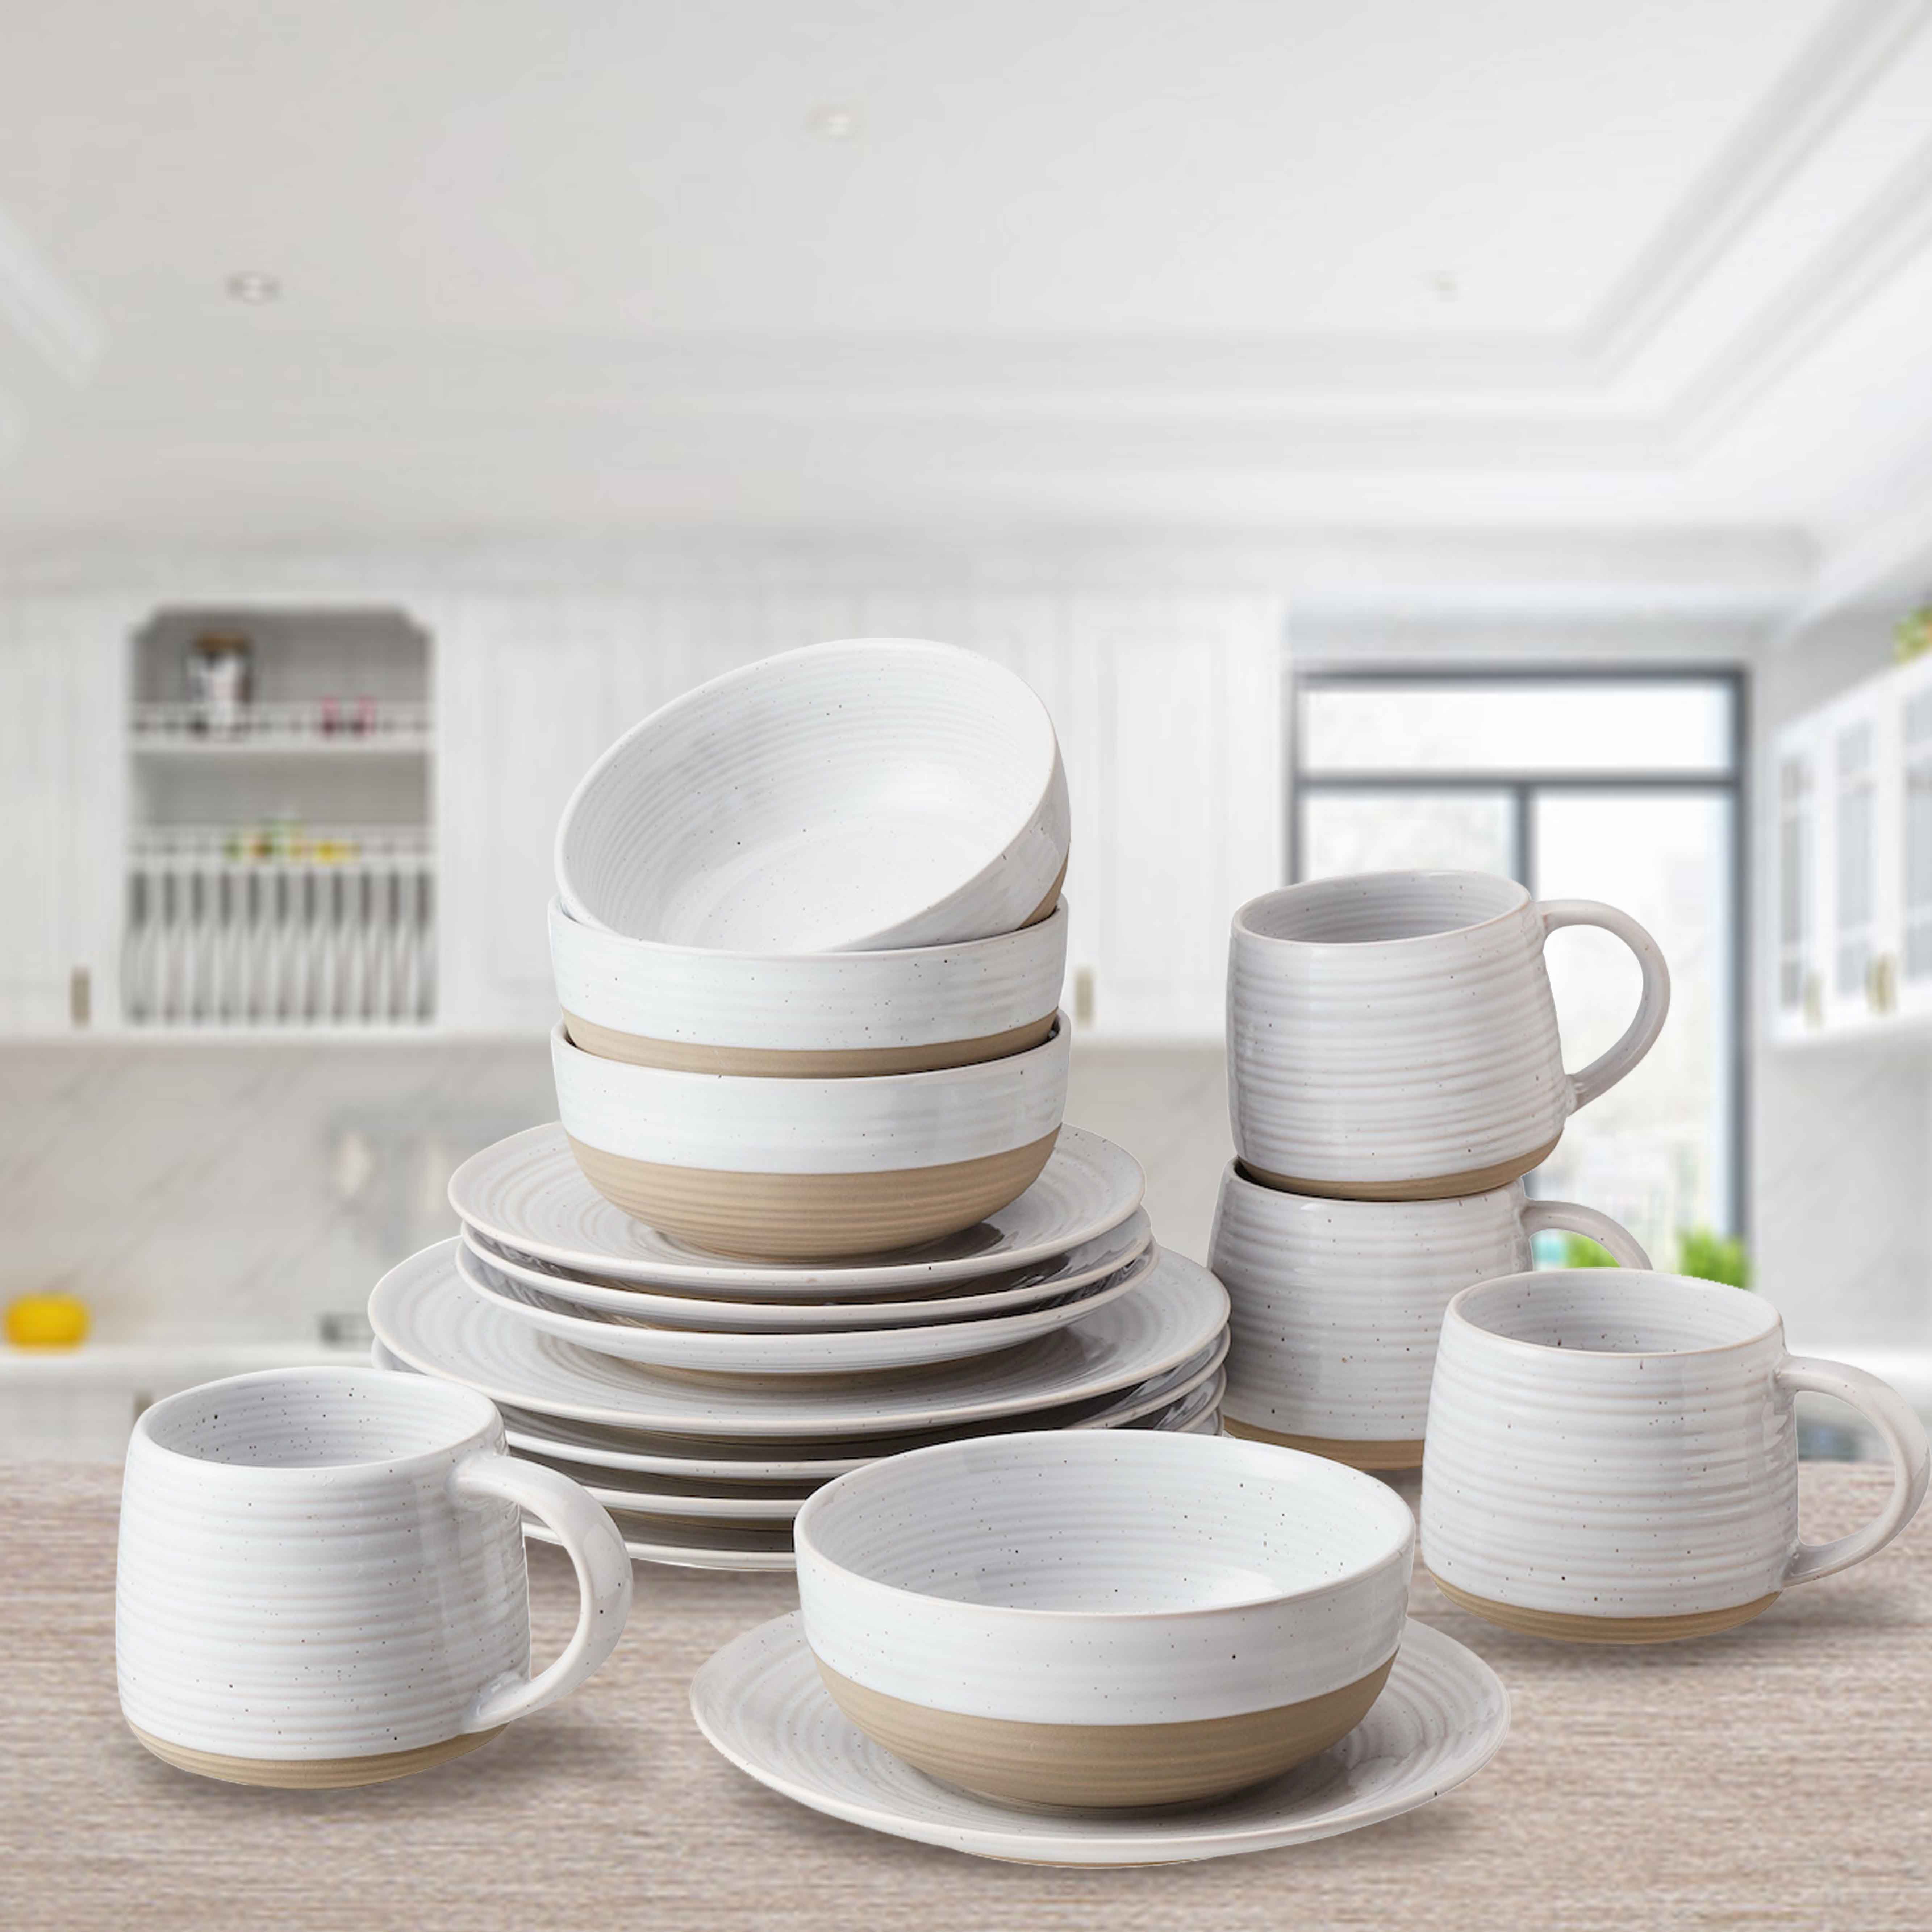 Abott Stoneware 16 Piece Dinnerware Set, Better Homes And Gardens Dinnerware Patterns Free